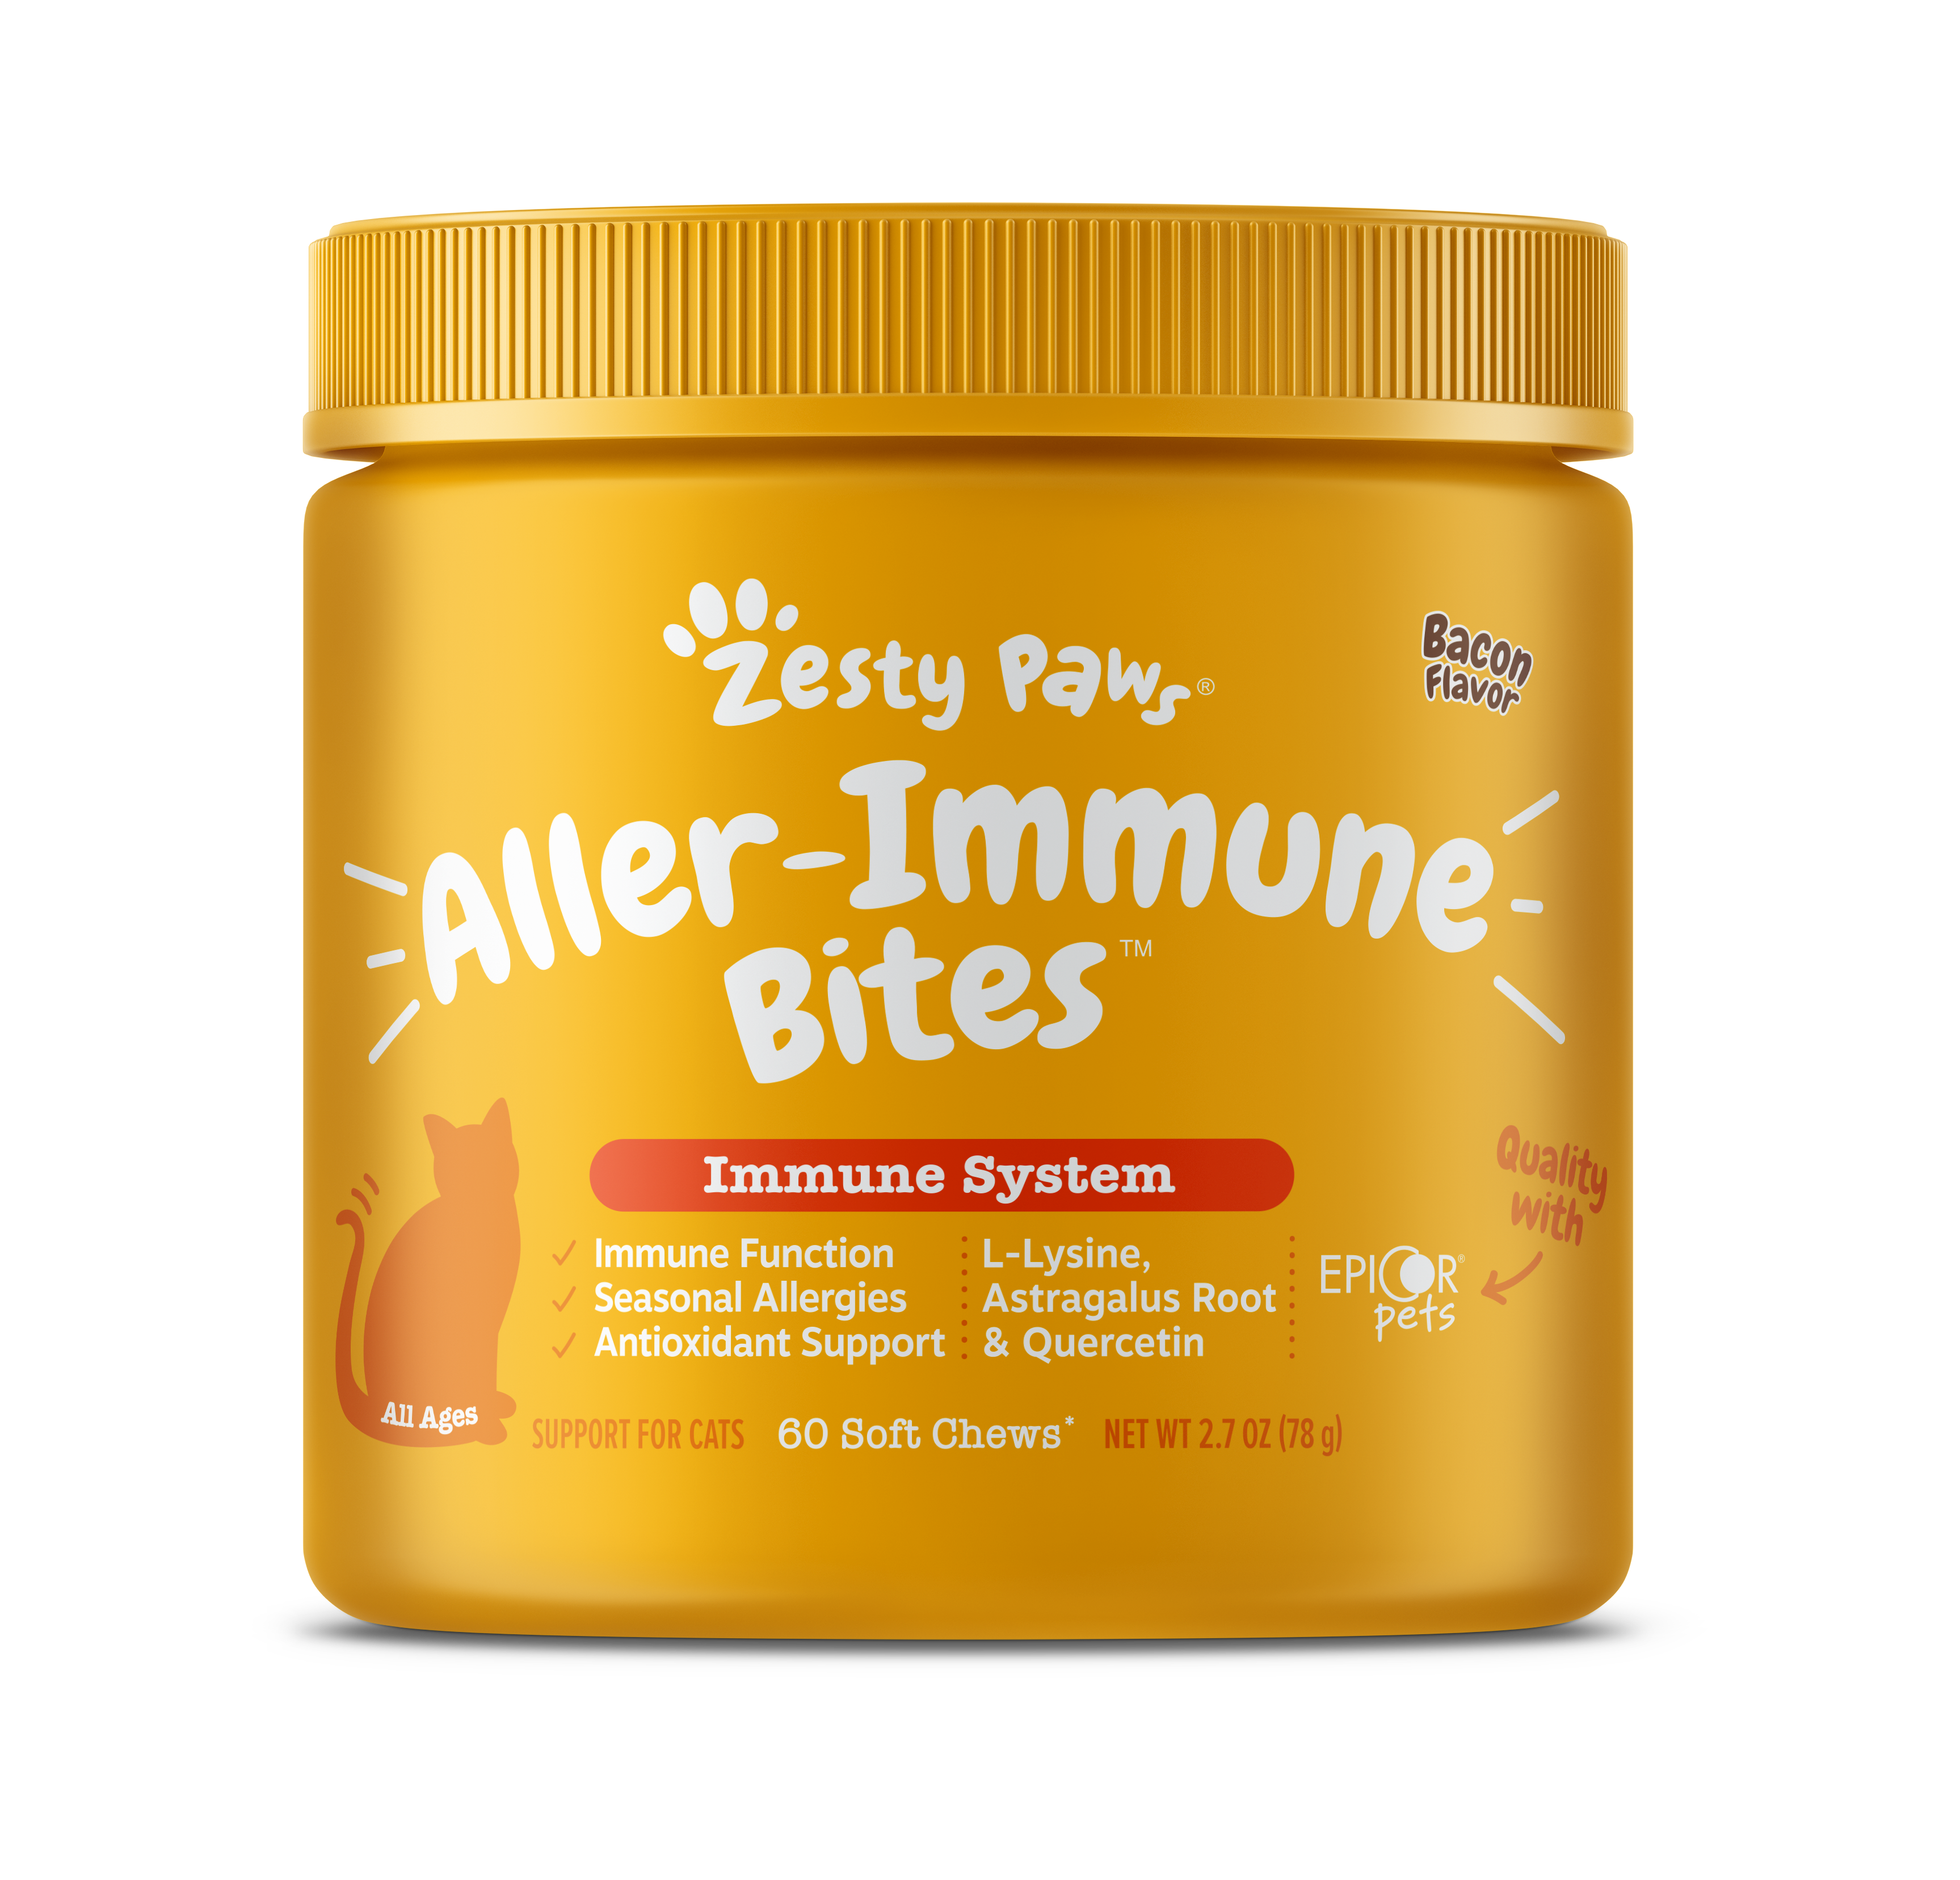 Image of Aller-Immune Bites for Cats